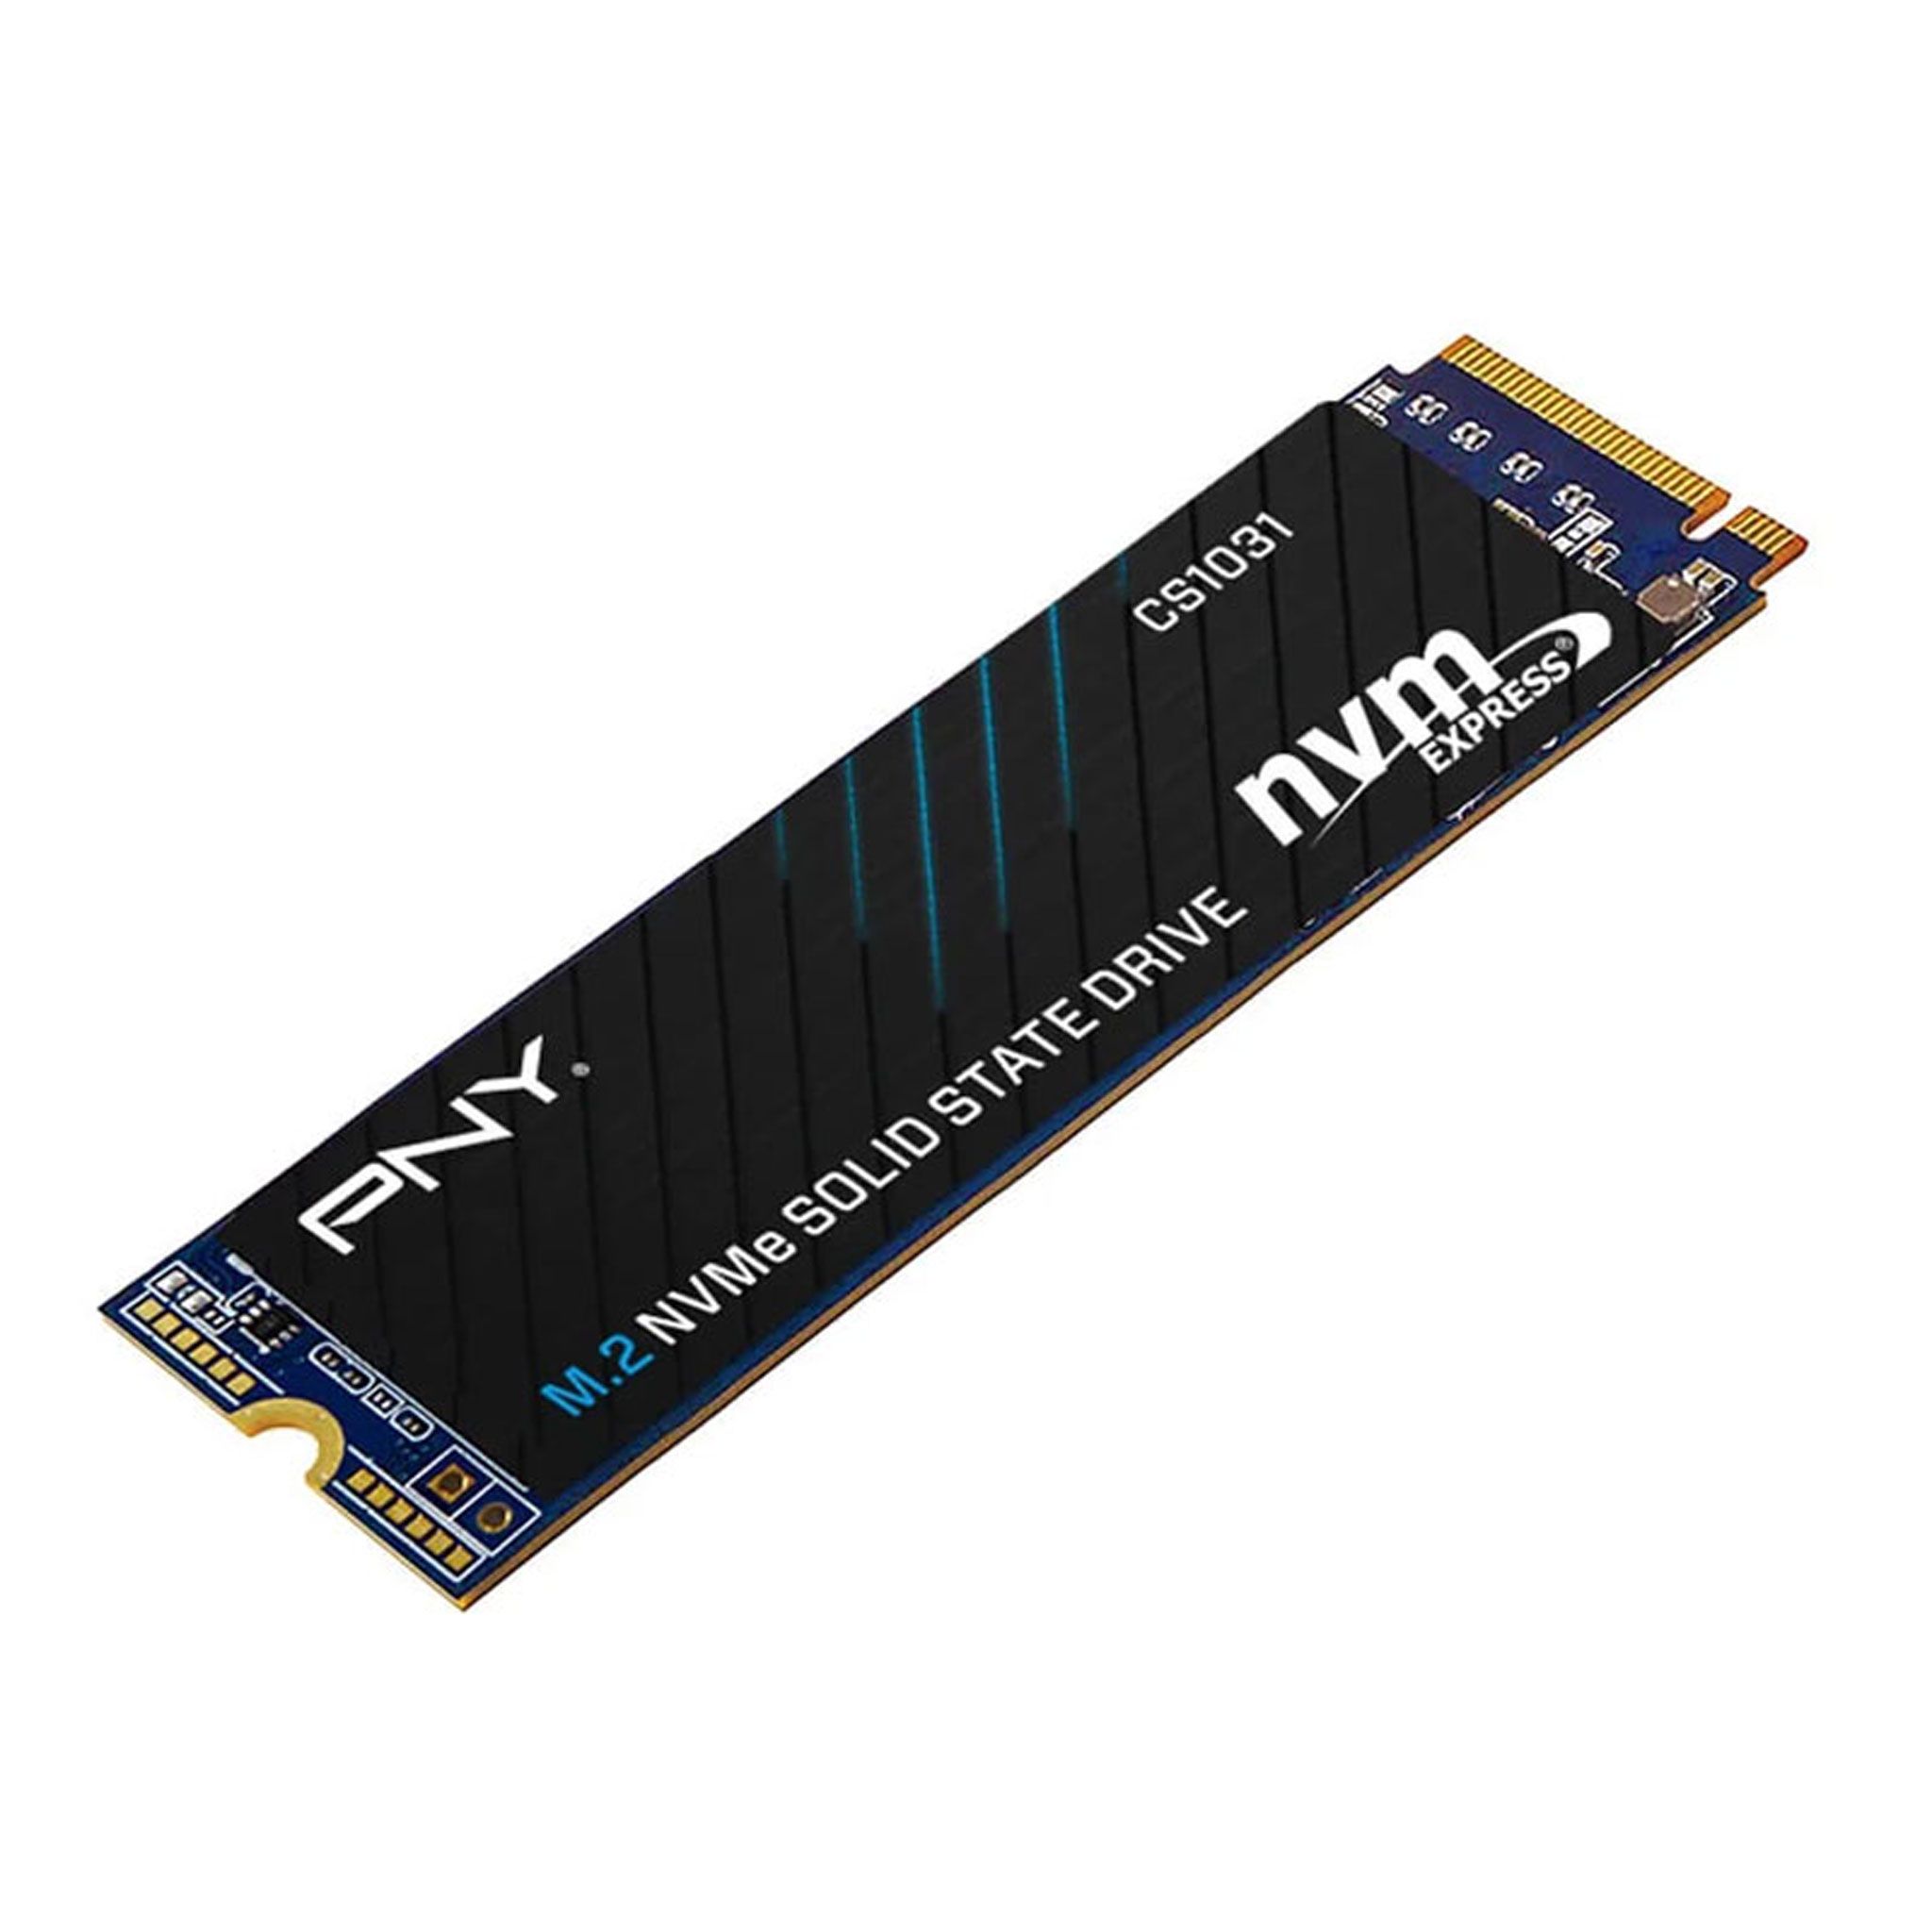 Ổ cứng SSD PNY CS1031 1TB M.2 2280 NVMe PCIe Gen 3x4